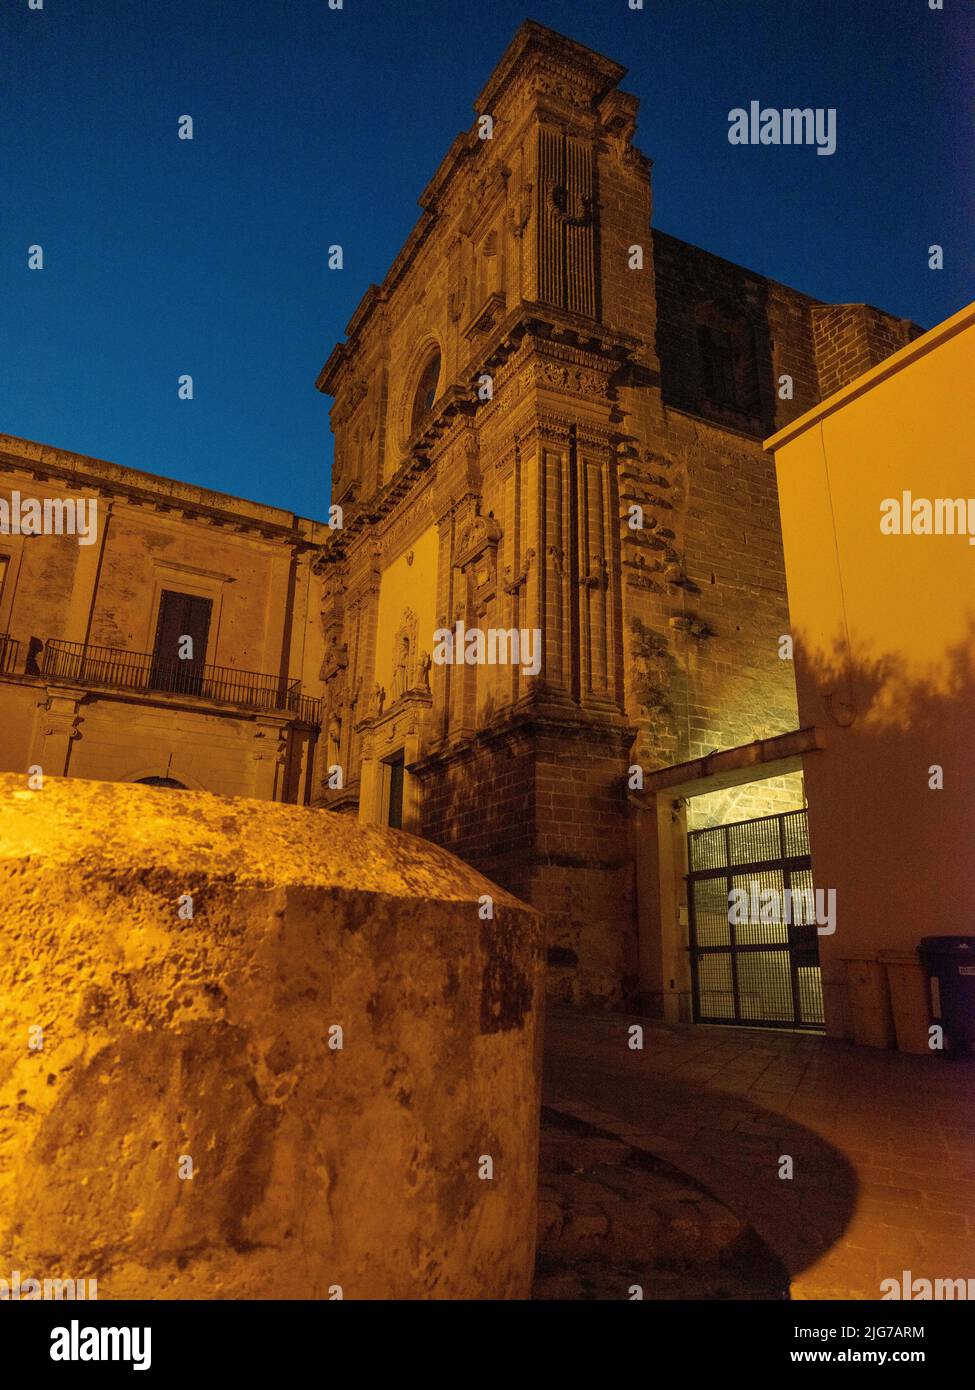 Une église abandonnée avec une façade ornée mais obscurcie reflétée par les lumières de rue dans les rues arrière de Nardo, Puglia au crépuscule. Banque D'Images